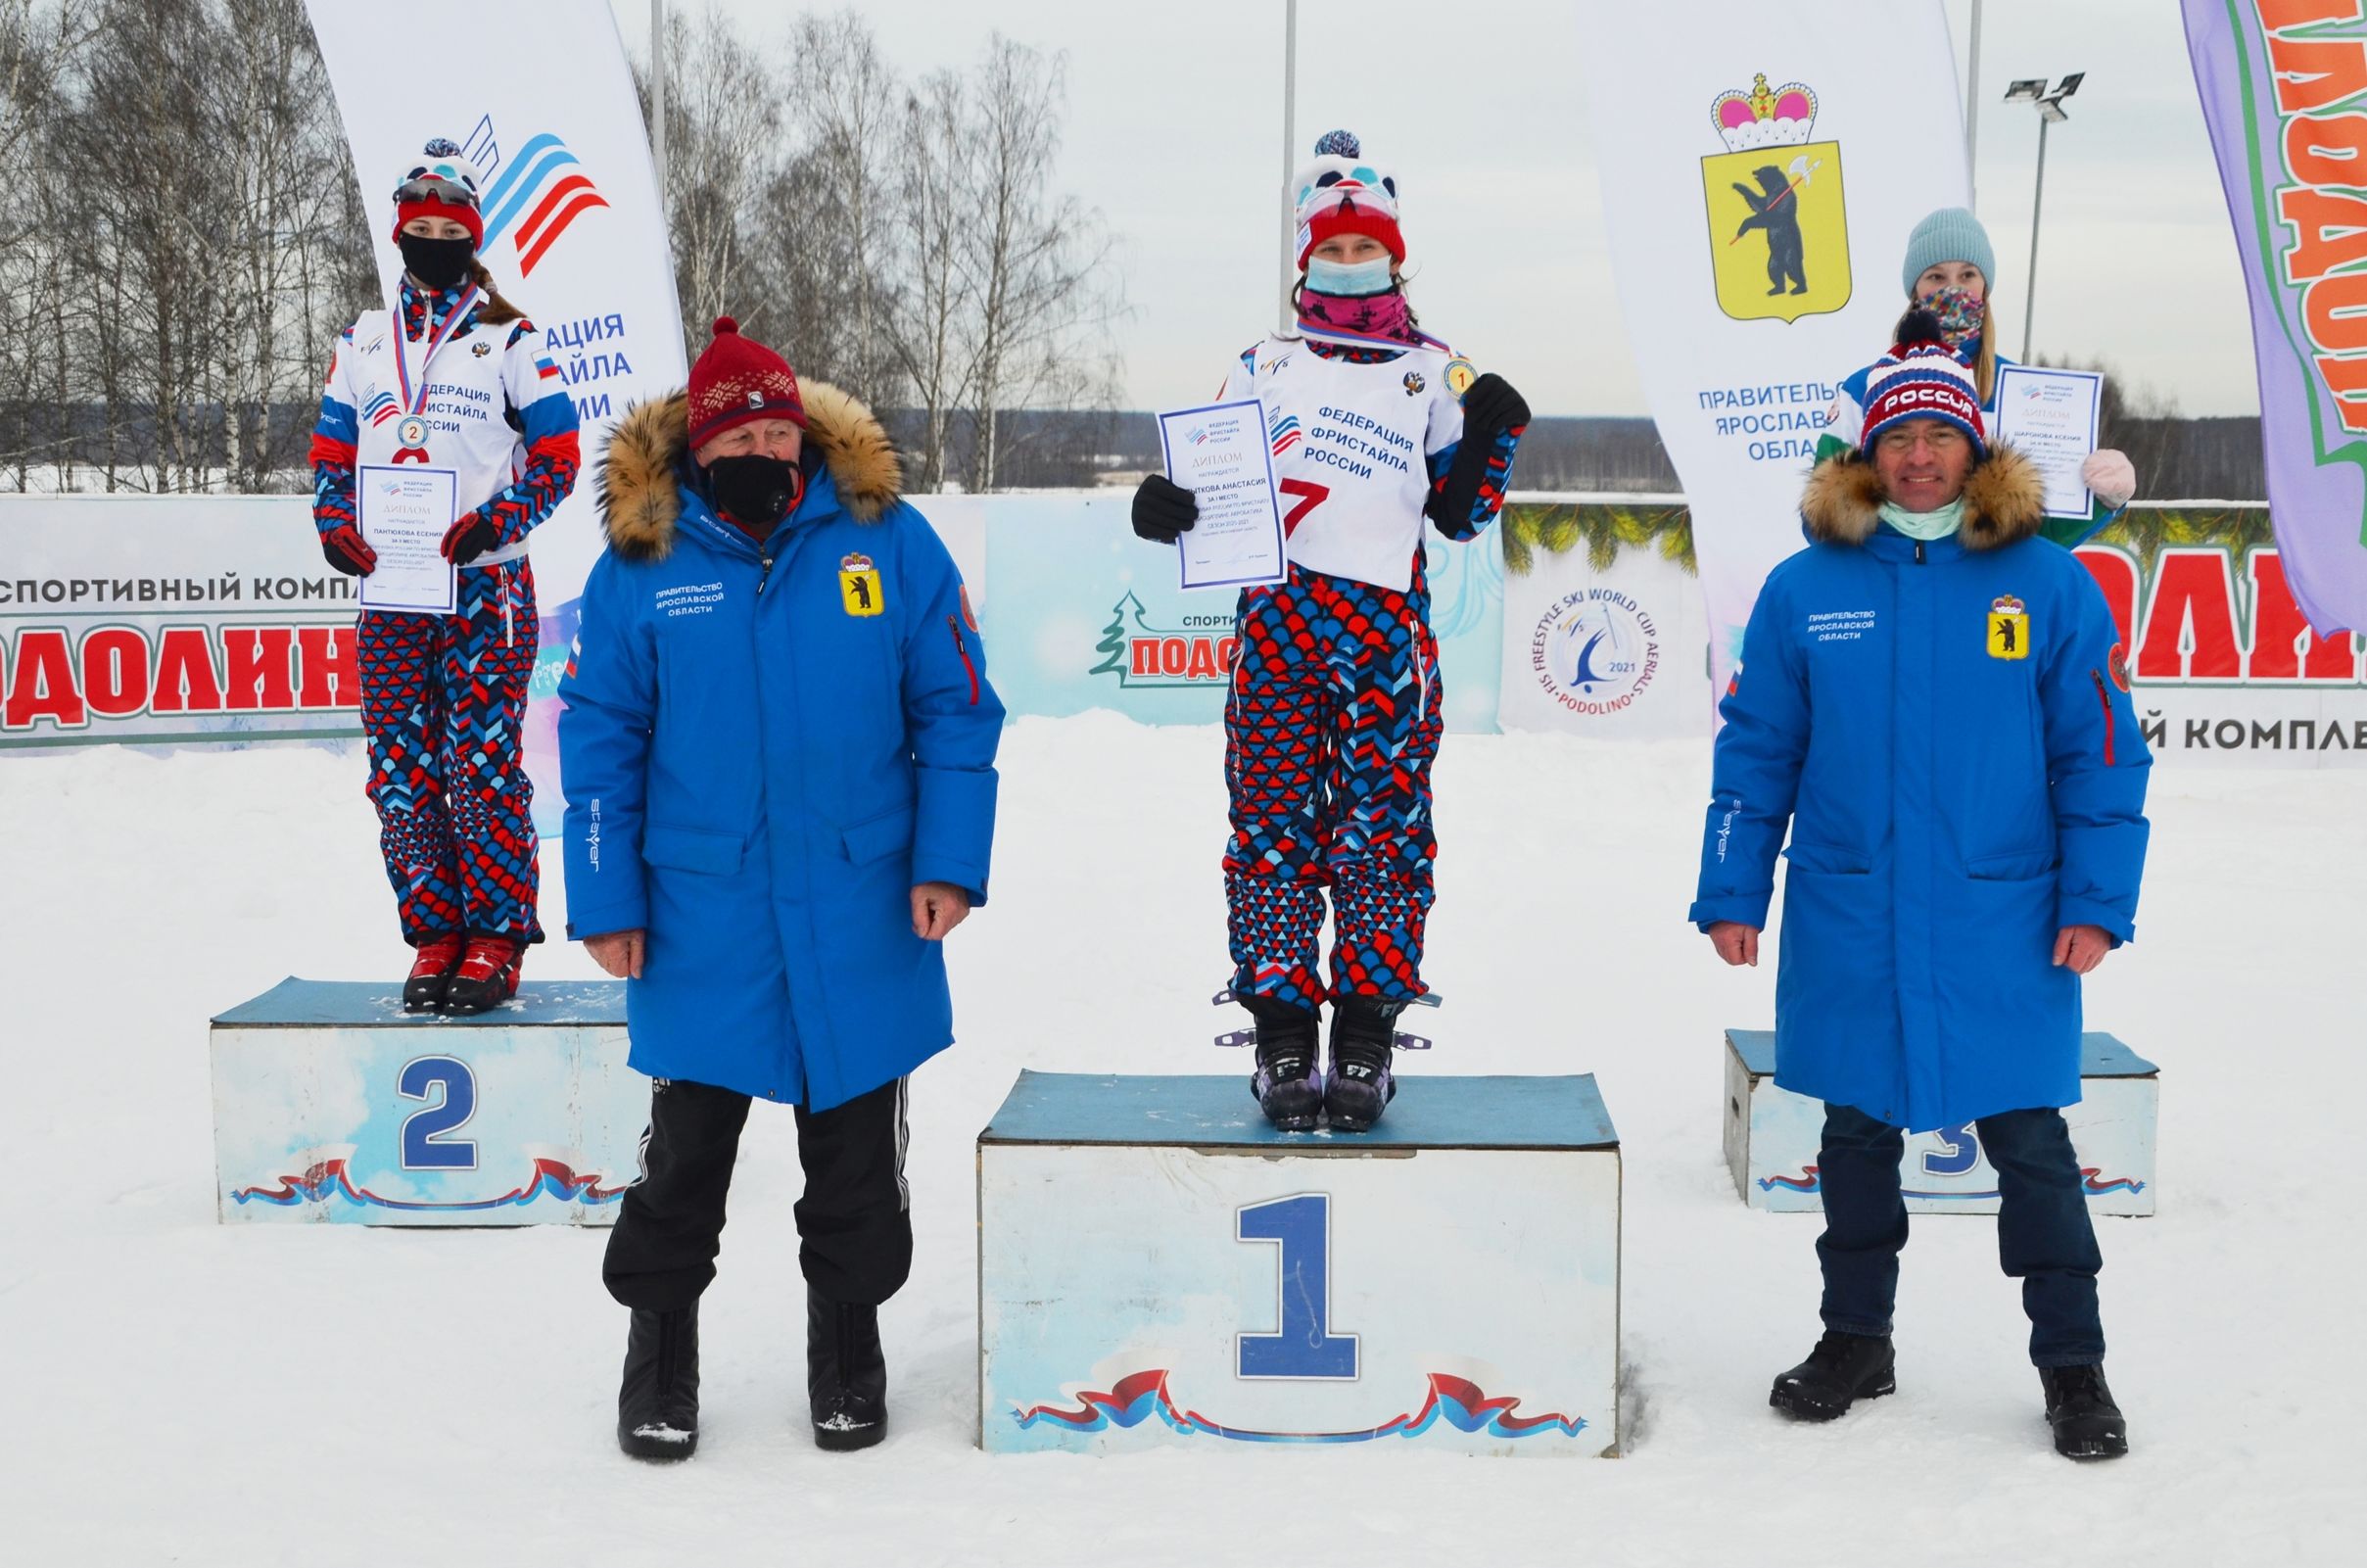 Ярославцы заняли первые места на очередном этапе Кубка России по фристайлу